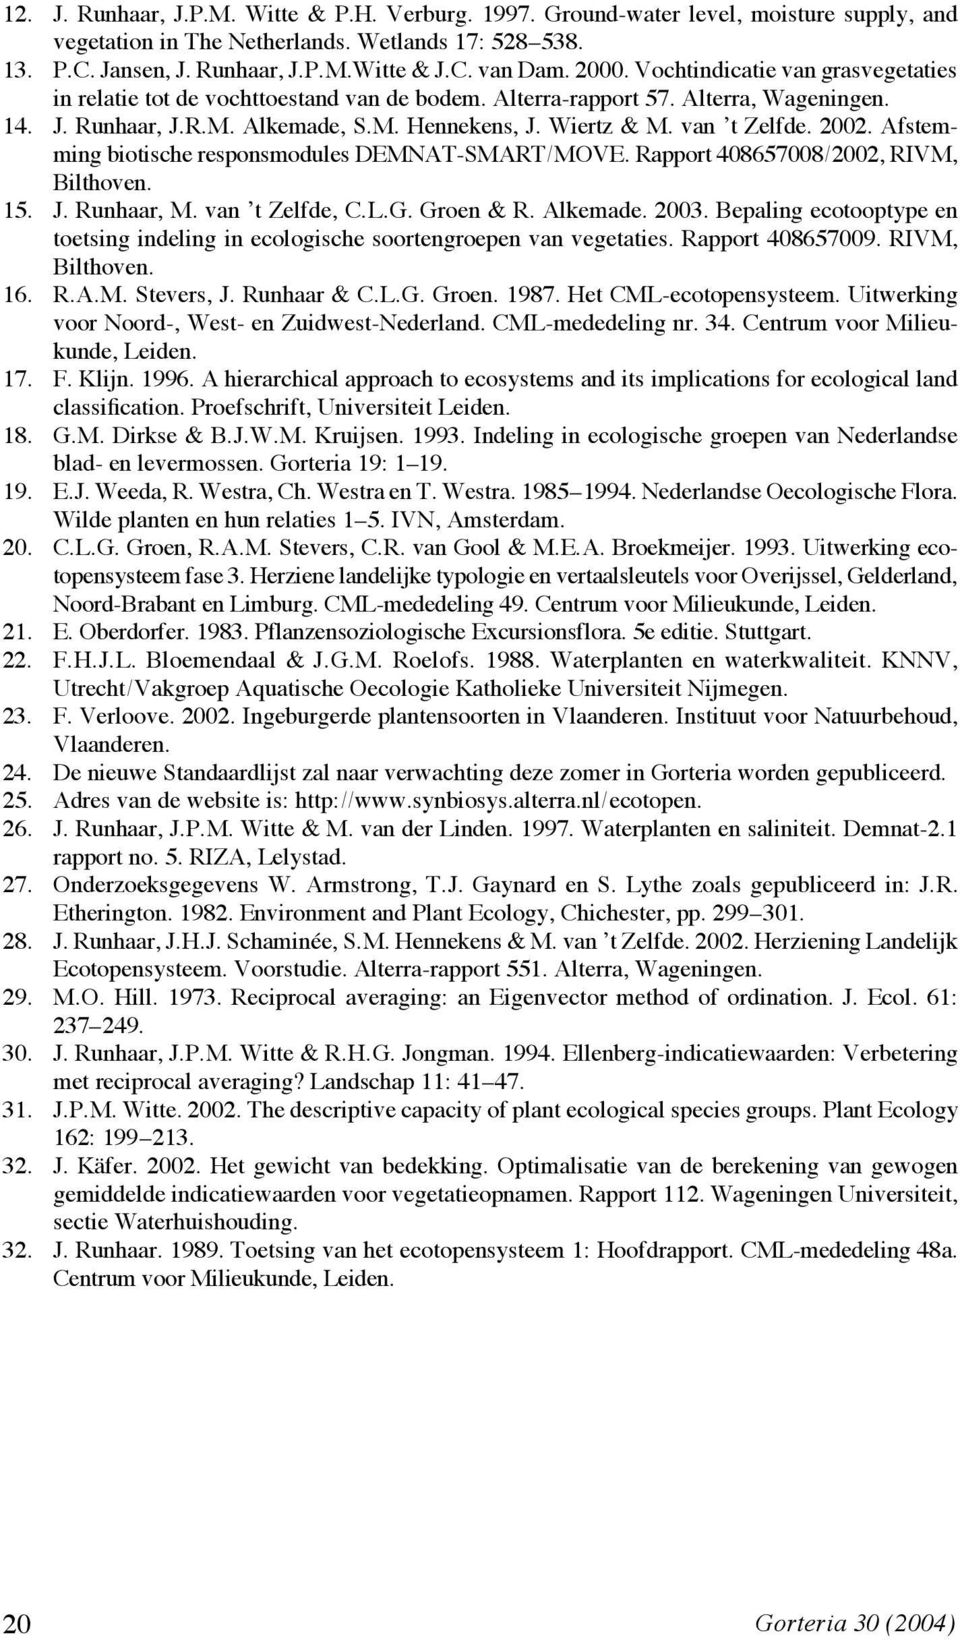 van t Zelfde. 2002. Afstemming biotische responsmodules DEMNAT-SMART/MOVE. Rapport 408657008/2002, RIVM, Bilthoven. 15. J. Runhaar, M. van t Zelfde, C.L.G. Groen & R. Alkemade. 2003.